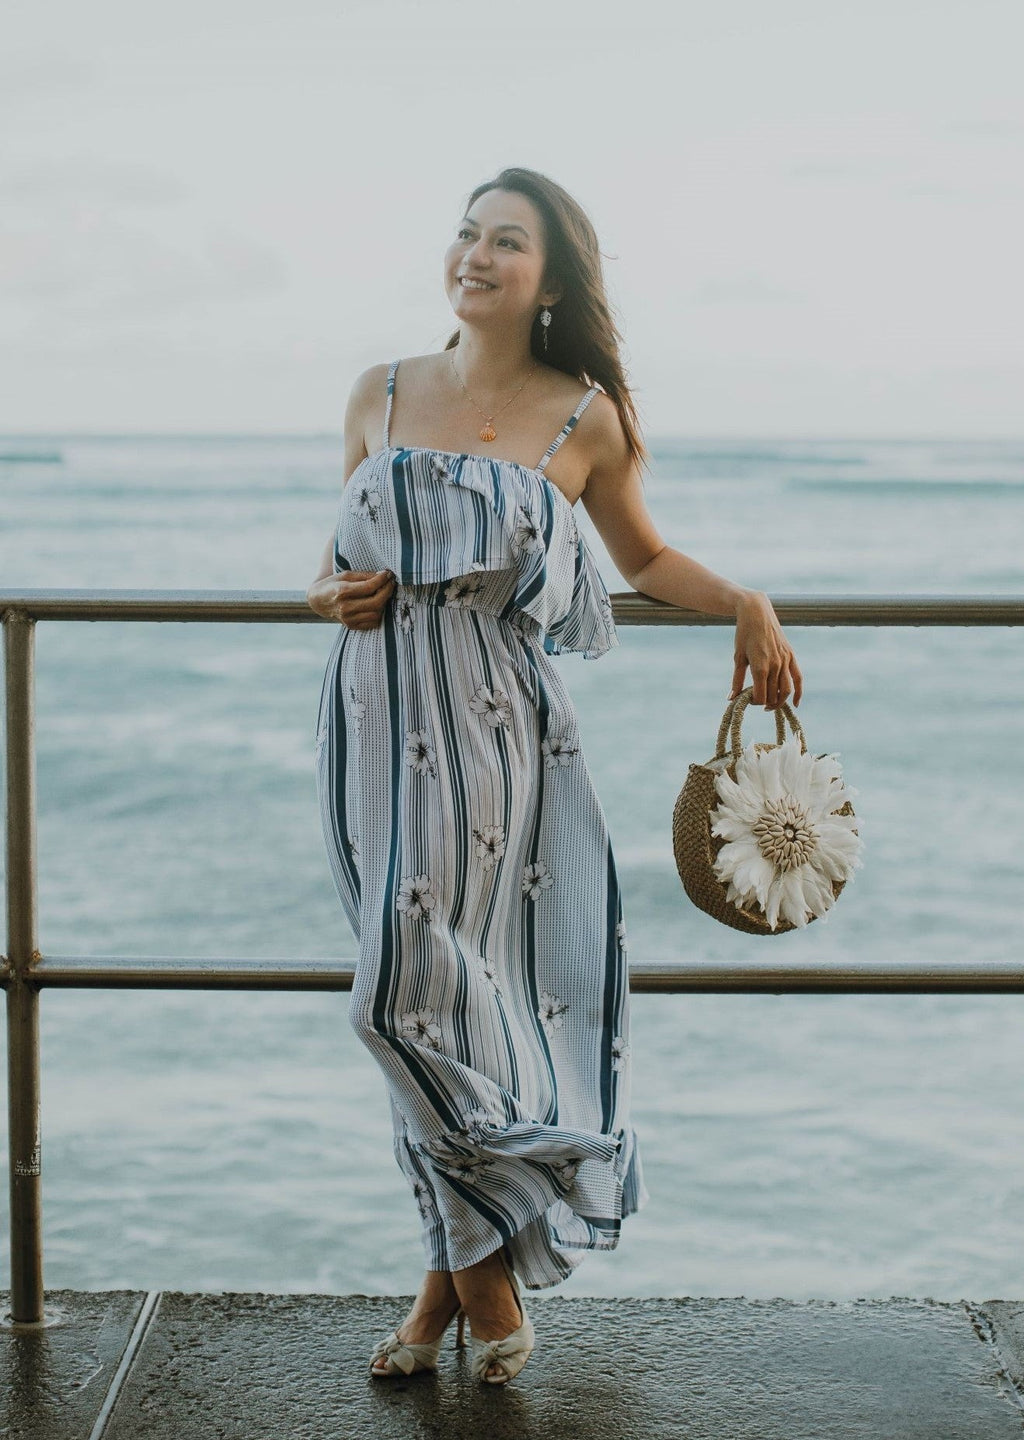 モアナ ロング ブルー ハイビスカス ハワイアン ドレス